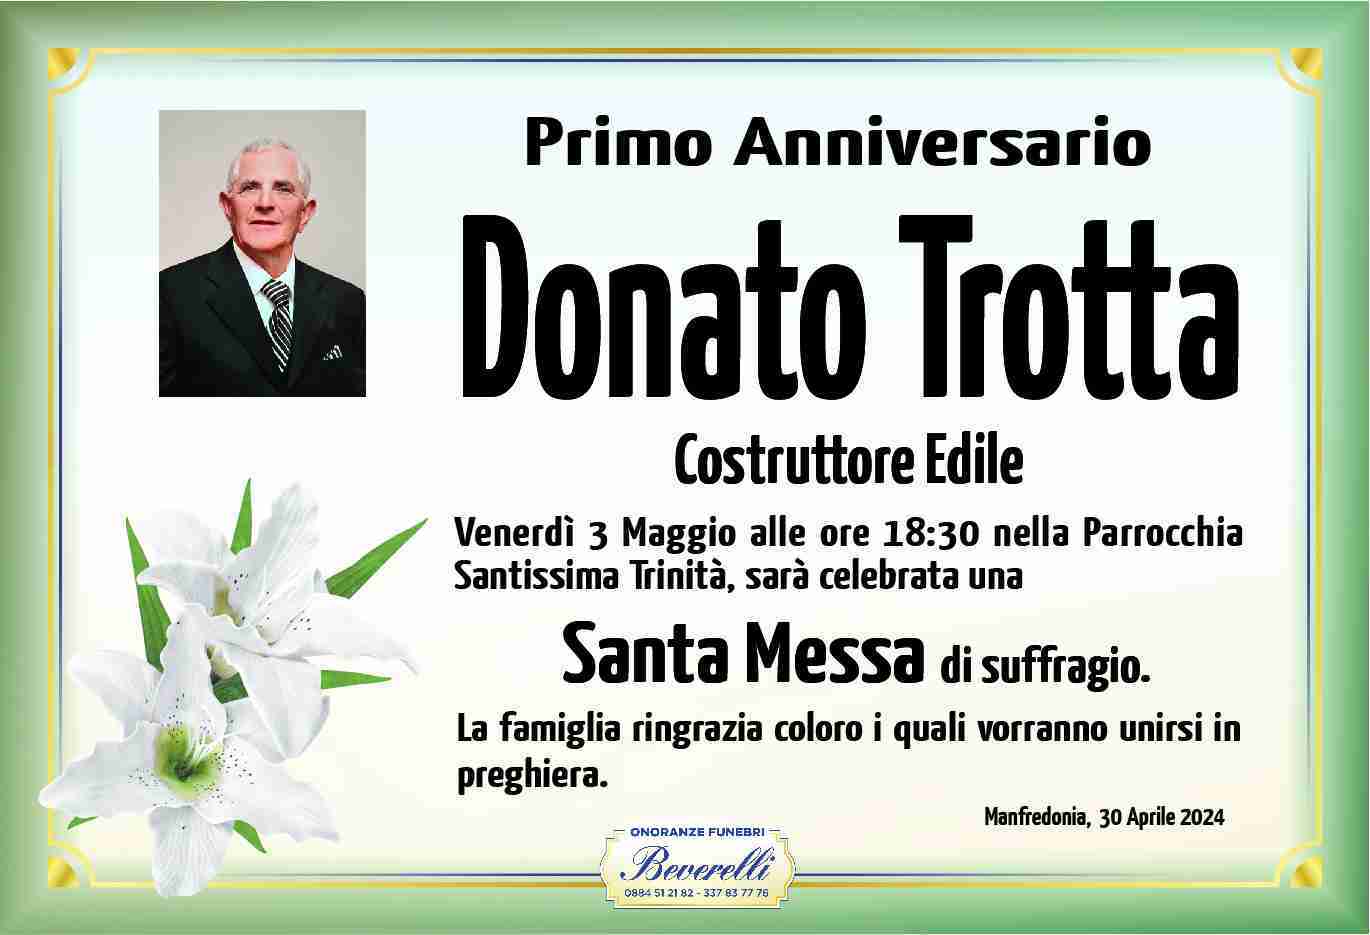 Donato Trotta